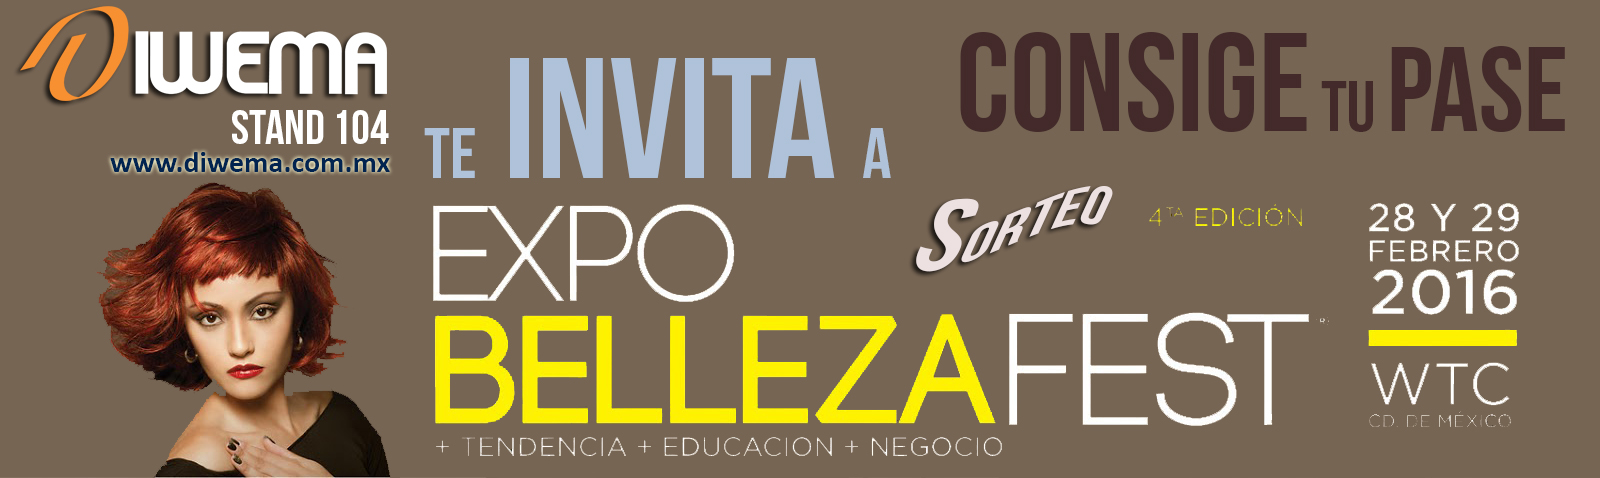 Invitaciones Expo BellezaFest 2016 - Entradas ExpoBellezaFest Mexico